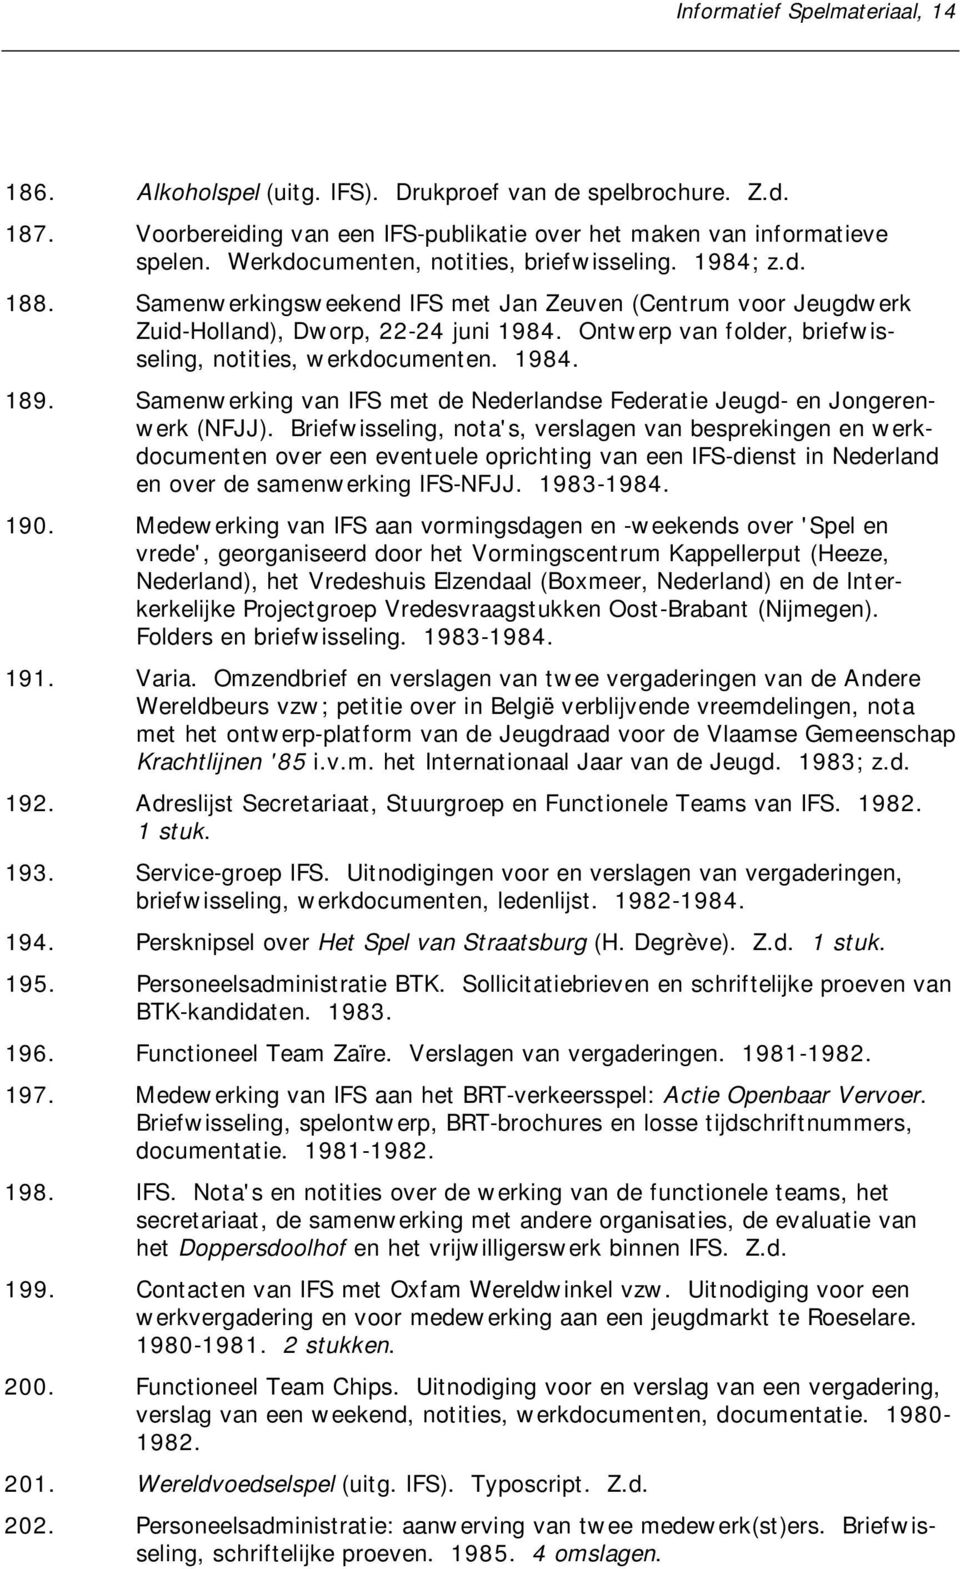 Ontwerp van folder, briefwisseling, notities, werkdocumenten. 1984. 189. Samenwerking van IFS met de Nederlandse Federatie Jeugd- en Jongerenwerk (NFJJ).